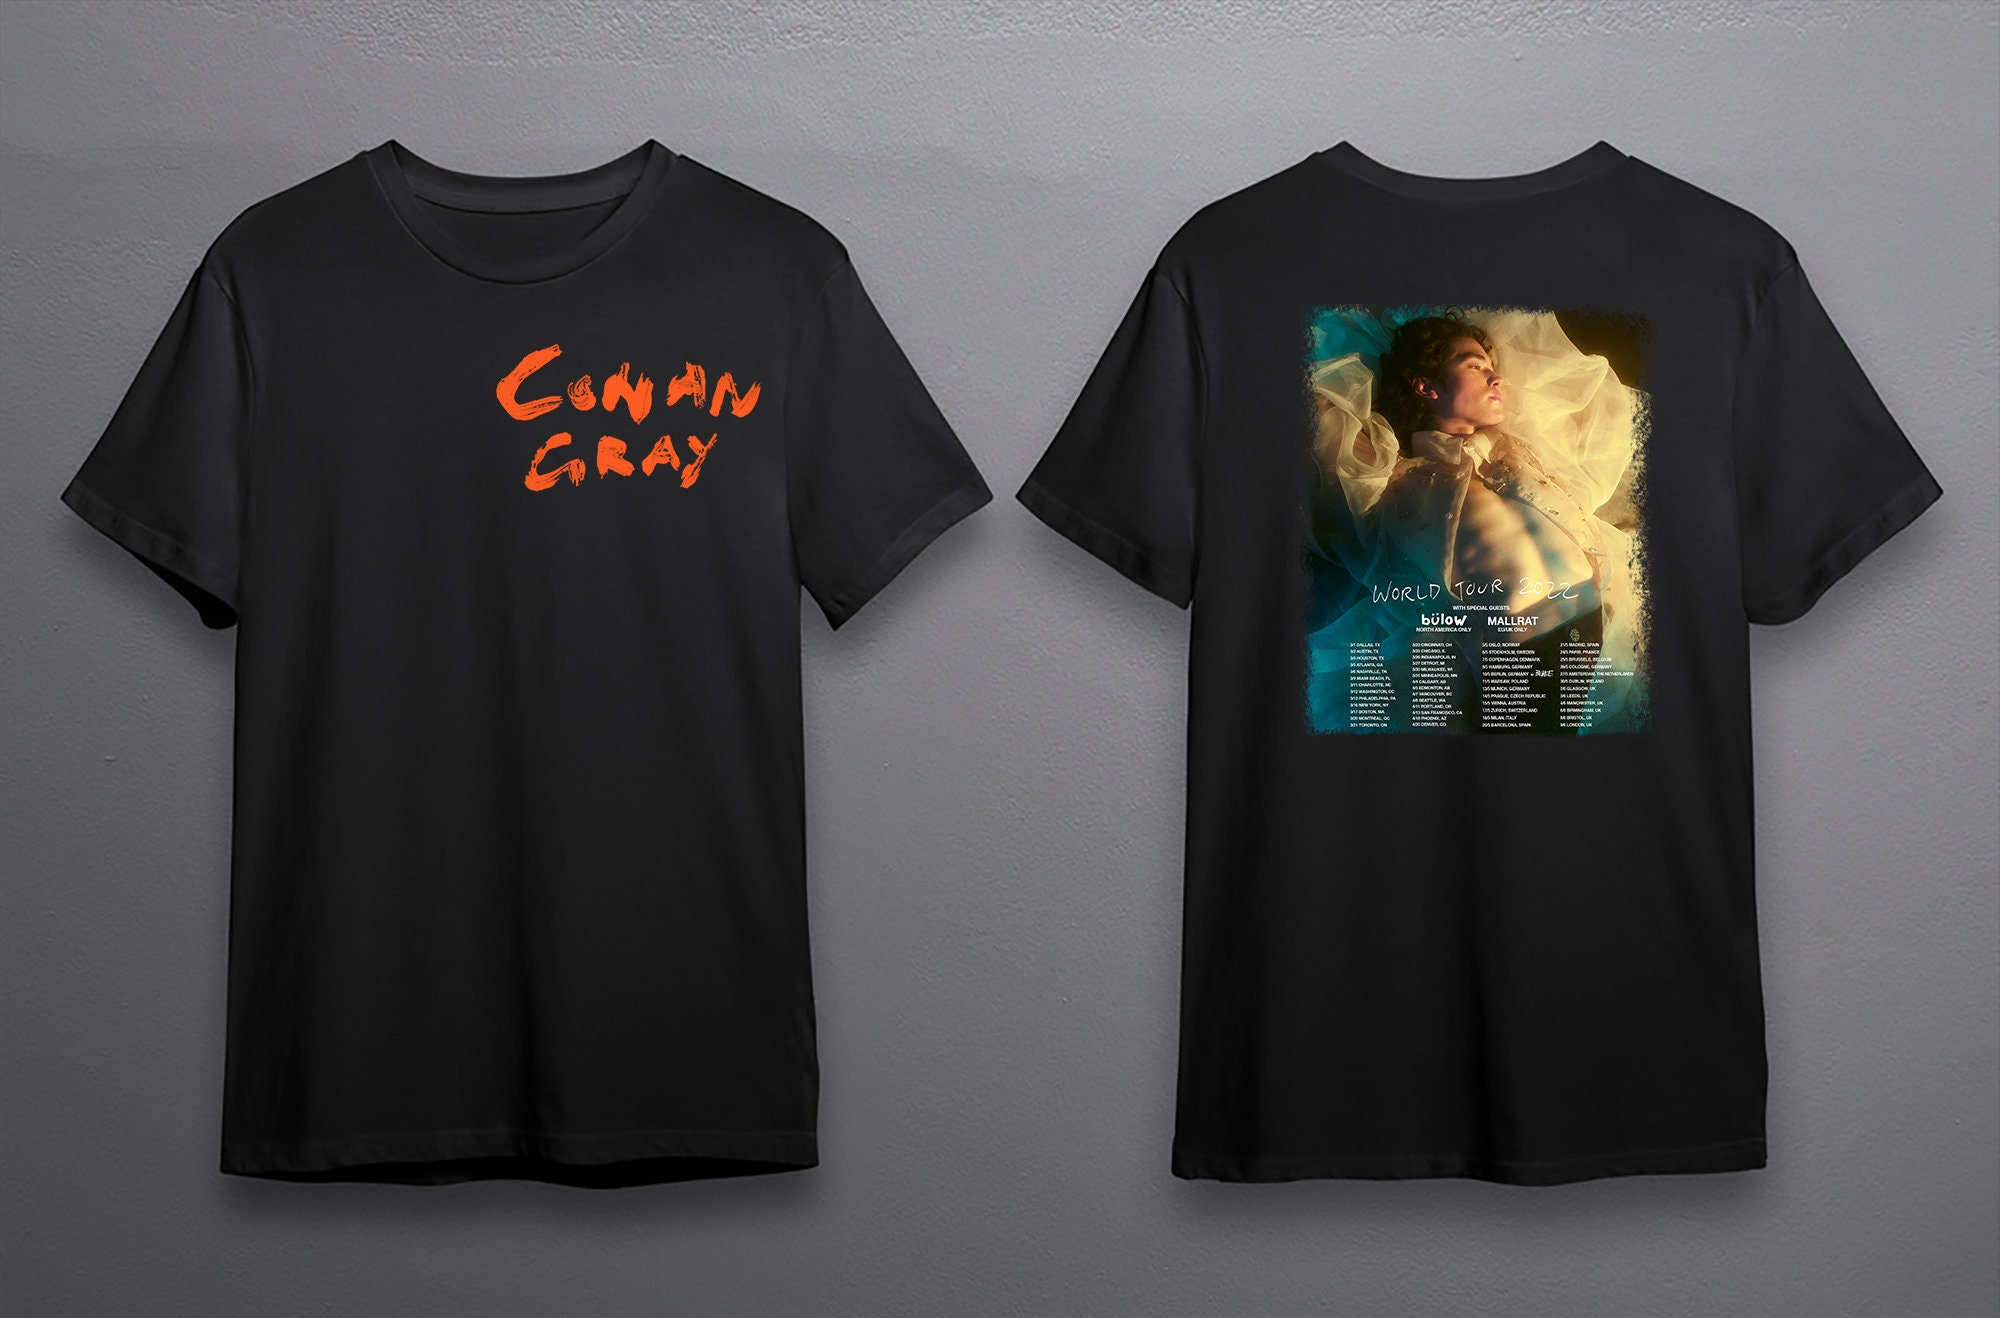 Discover Conan Gray World Tour 2022 Shirt, Conan Gray shirt, Conan gray North America Tour 2022 Shirt